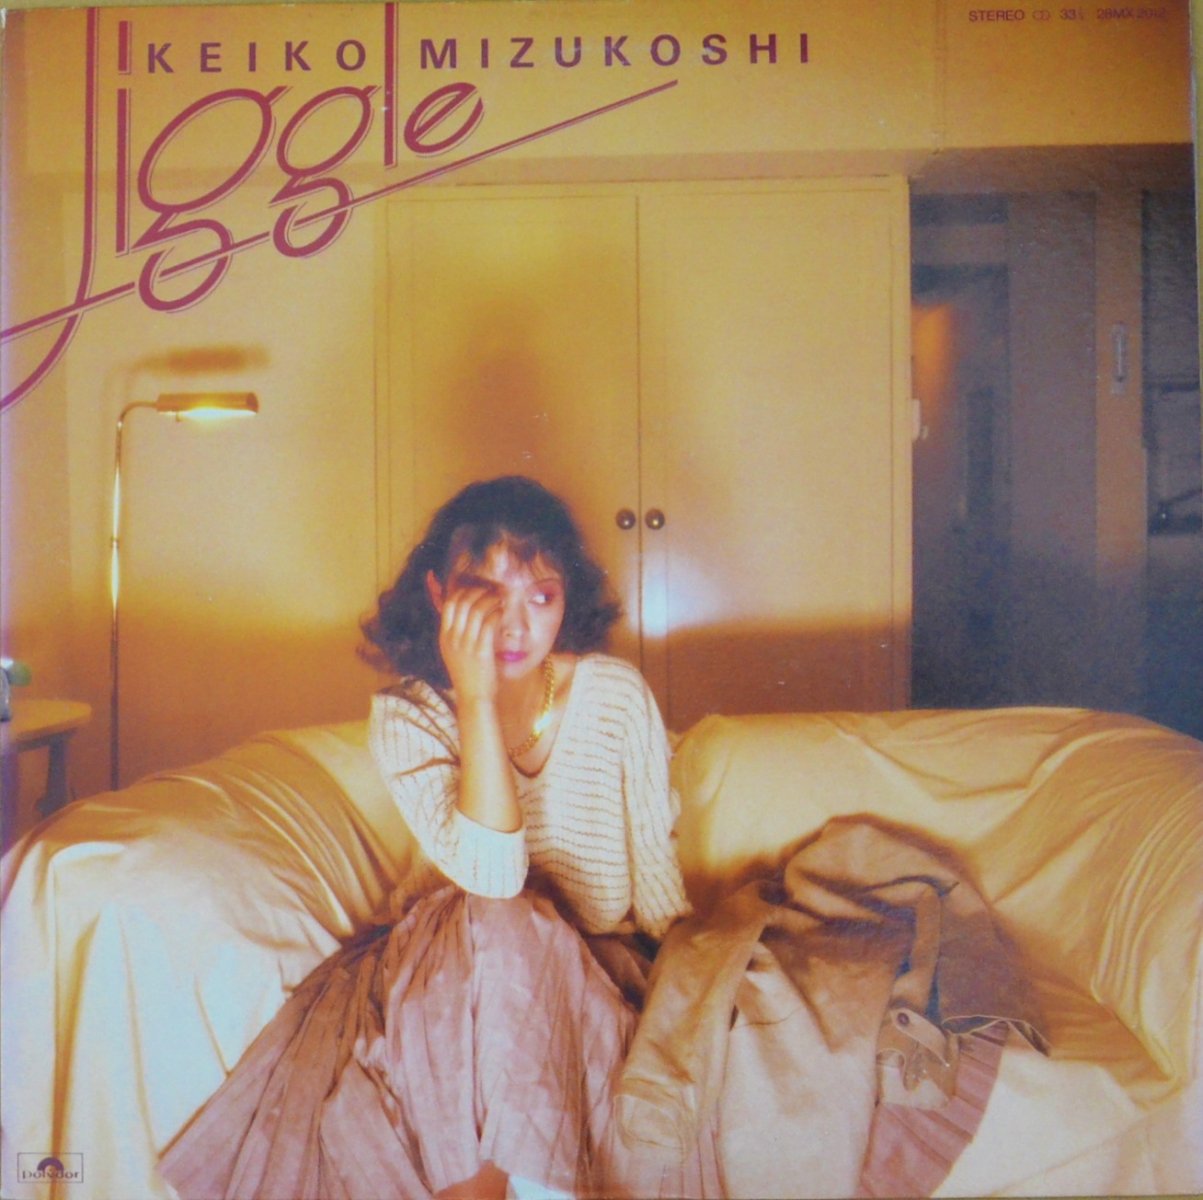 水越けいこ KEIKO MIZUKOSHI / JIGGLE (LP) - HIP TANK RECORDS